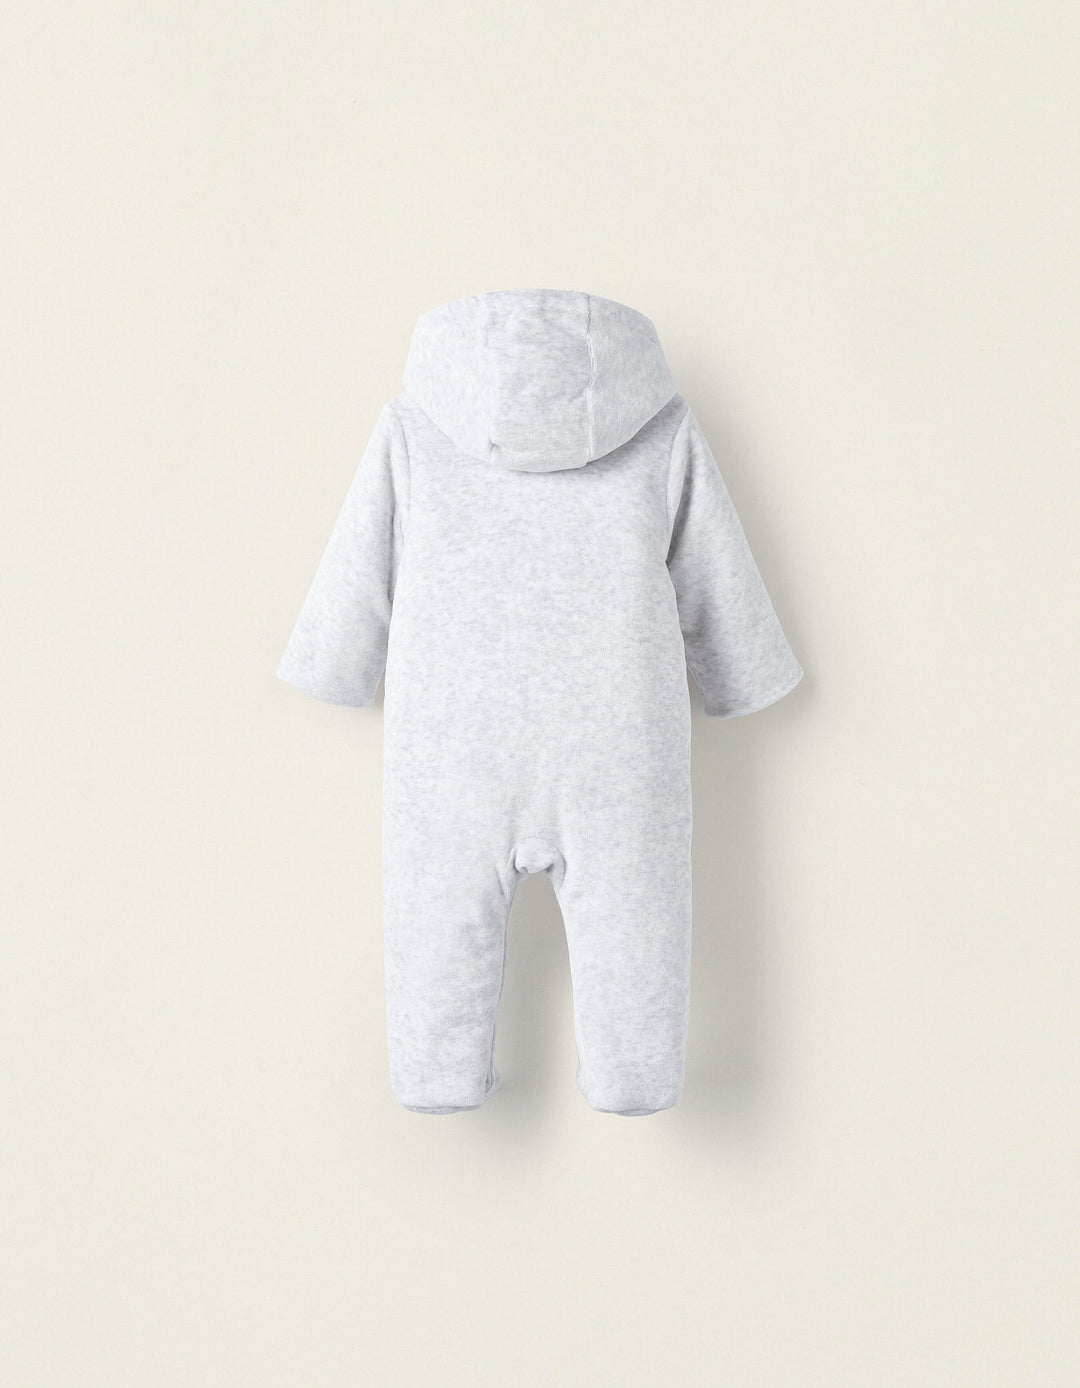 Velvet Babygrow for Baby and Newborn 'Elephant', Gray